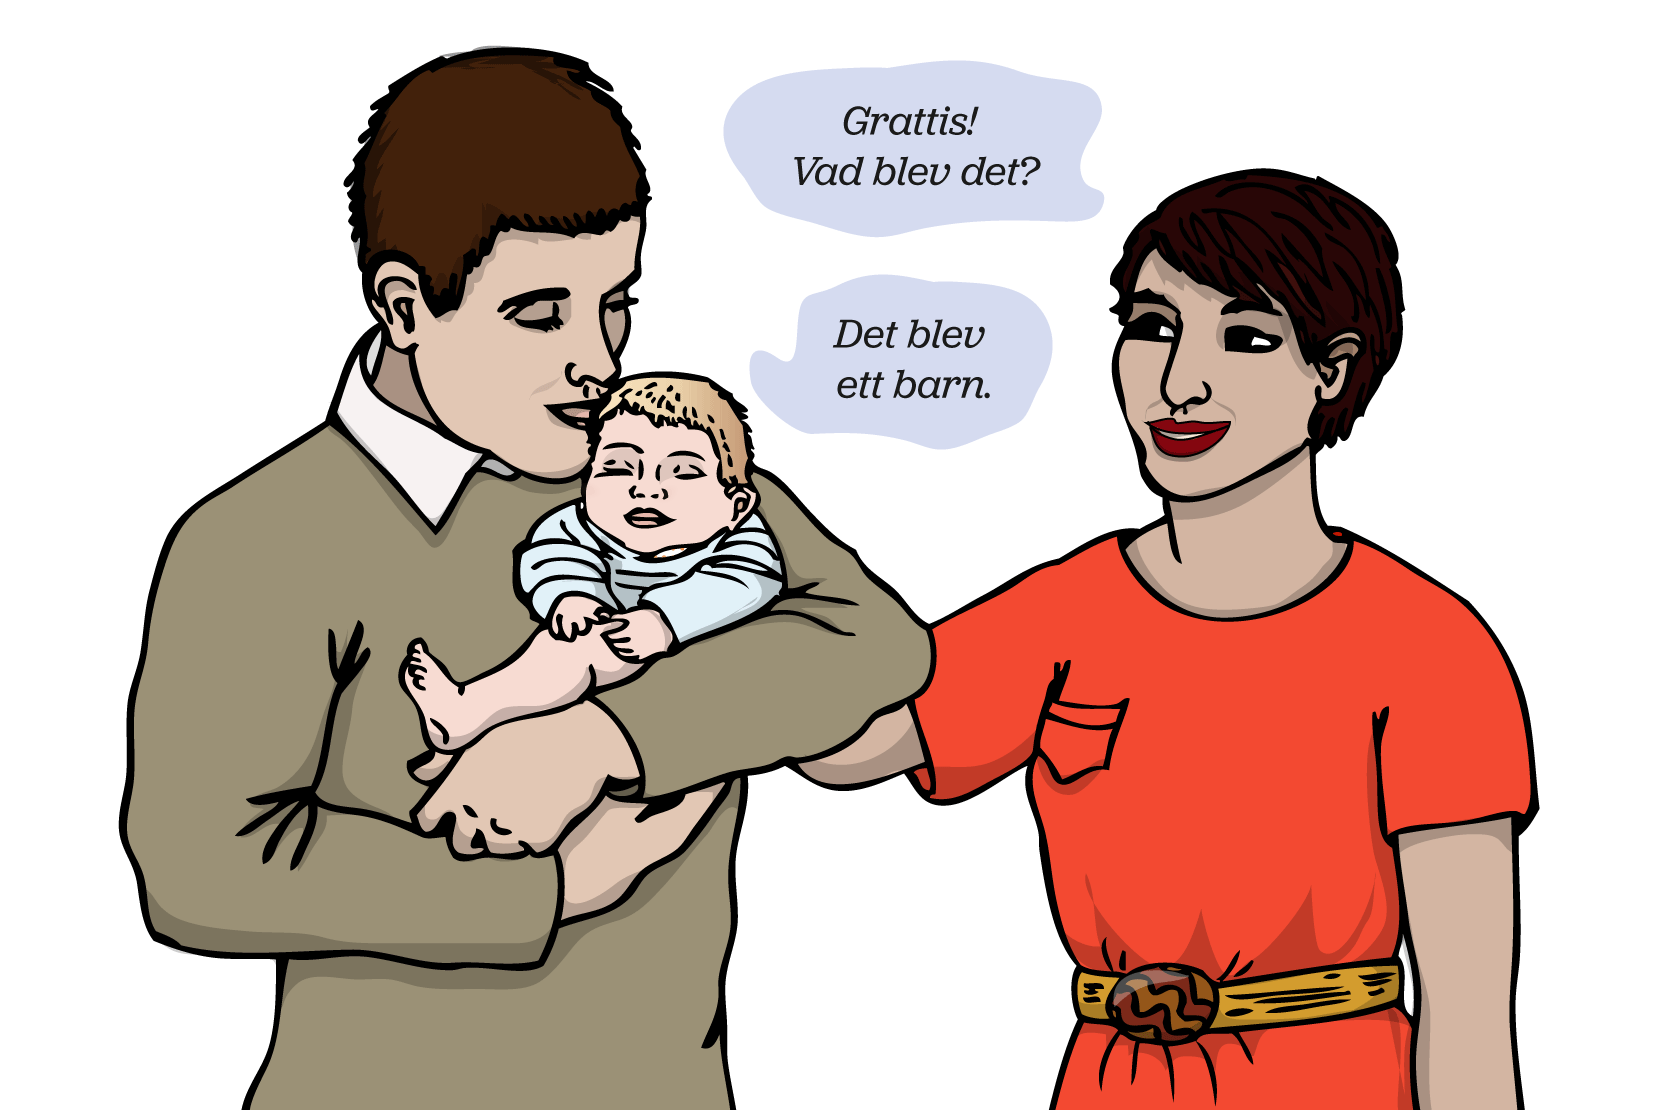 En person håller ett nyfött barn i famnen. En annan person säger: Grattis! Vad blev det?. Den första personen svara: Det blev ett barn. Illustration.